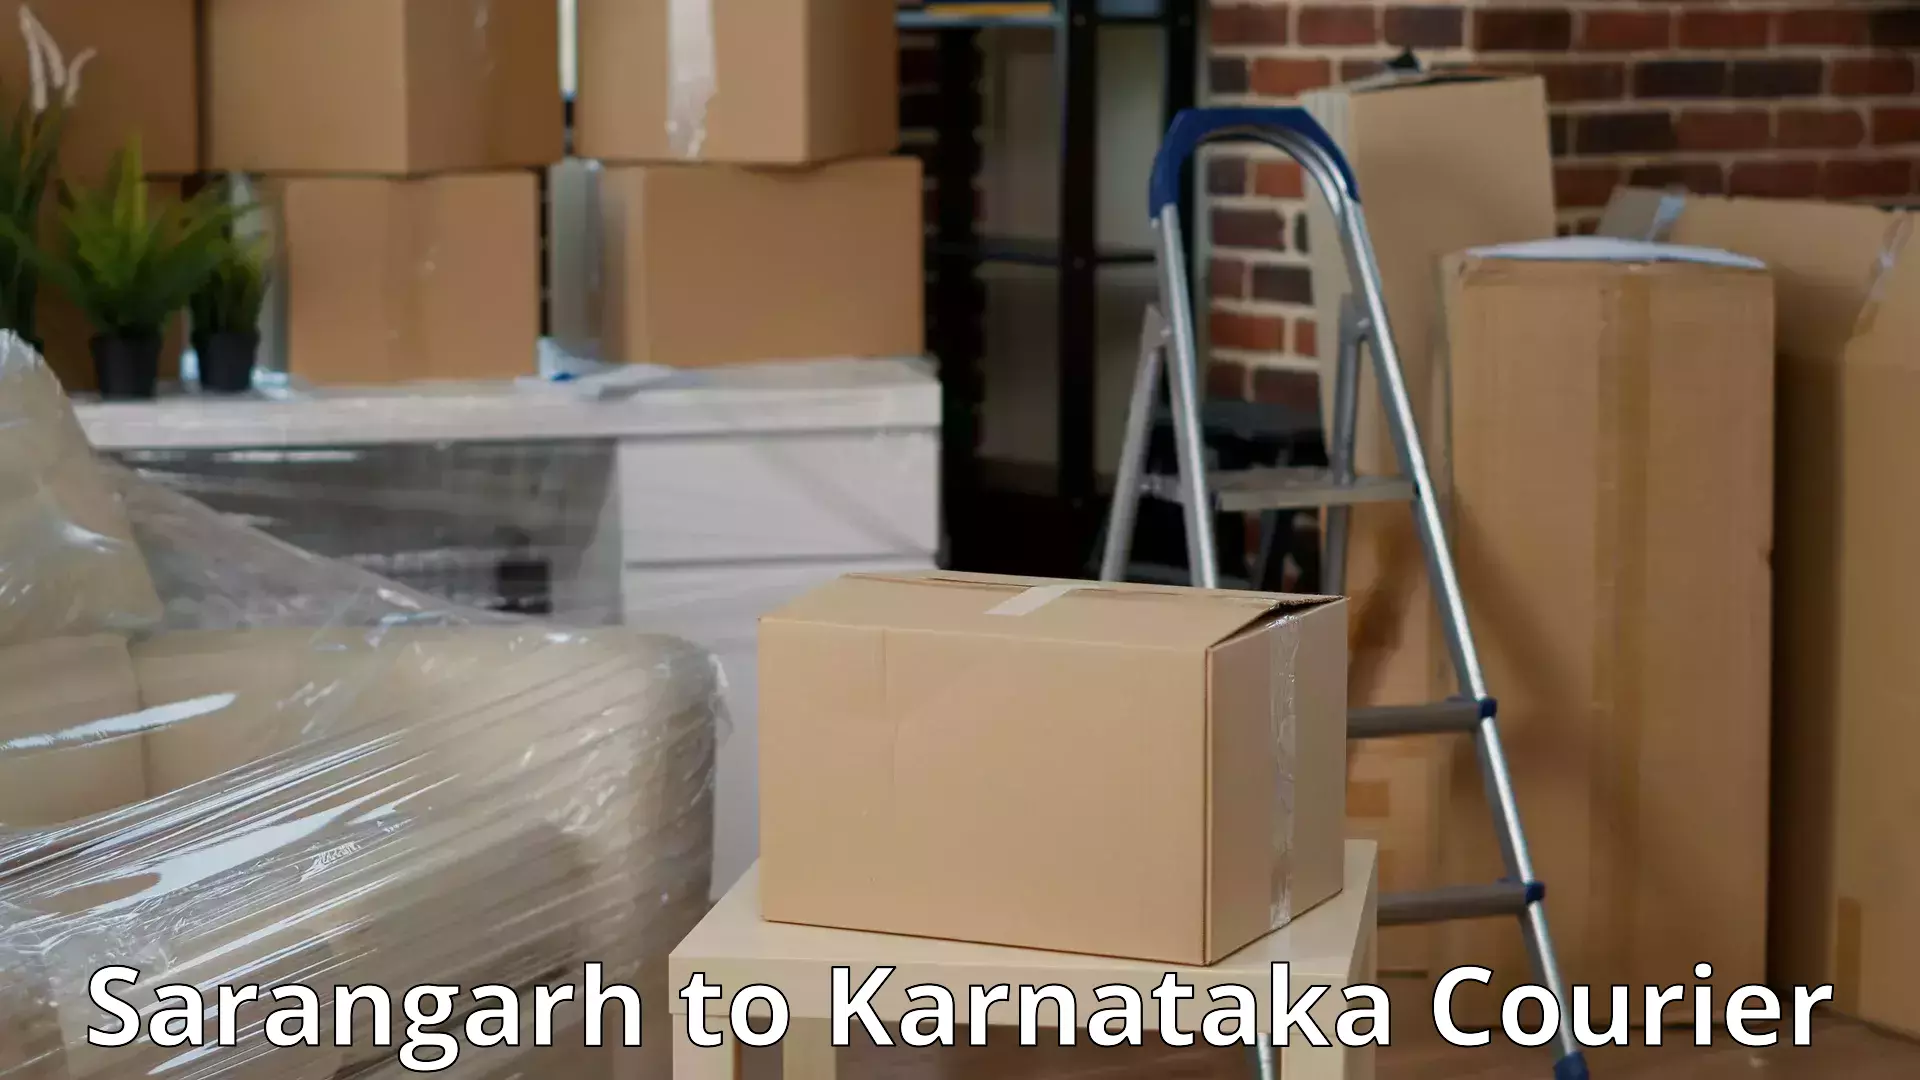 Full-service movers Sarangarh to Karnataka